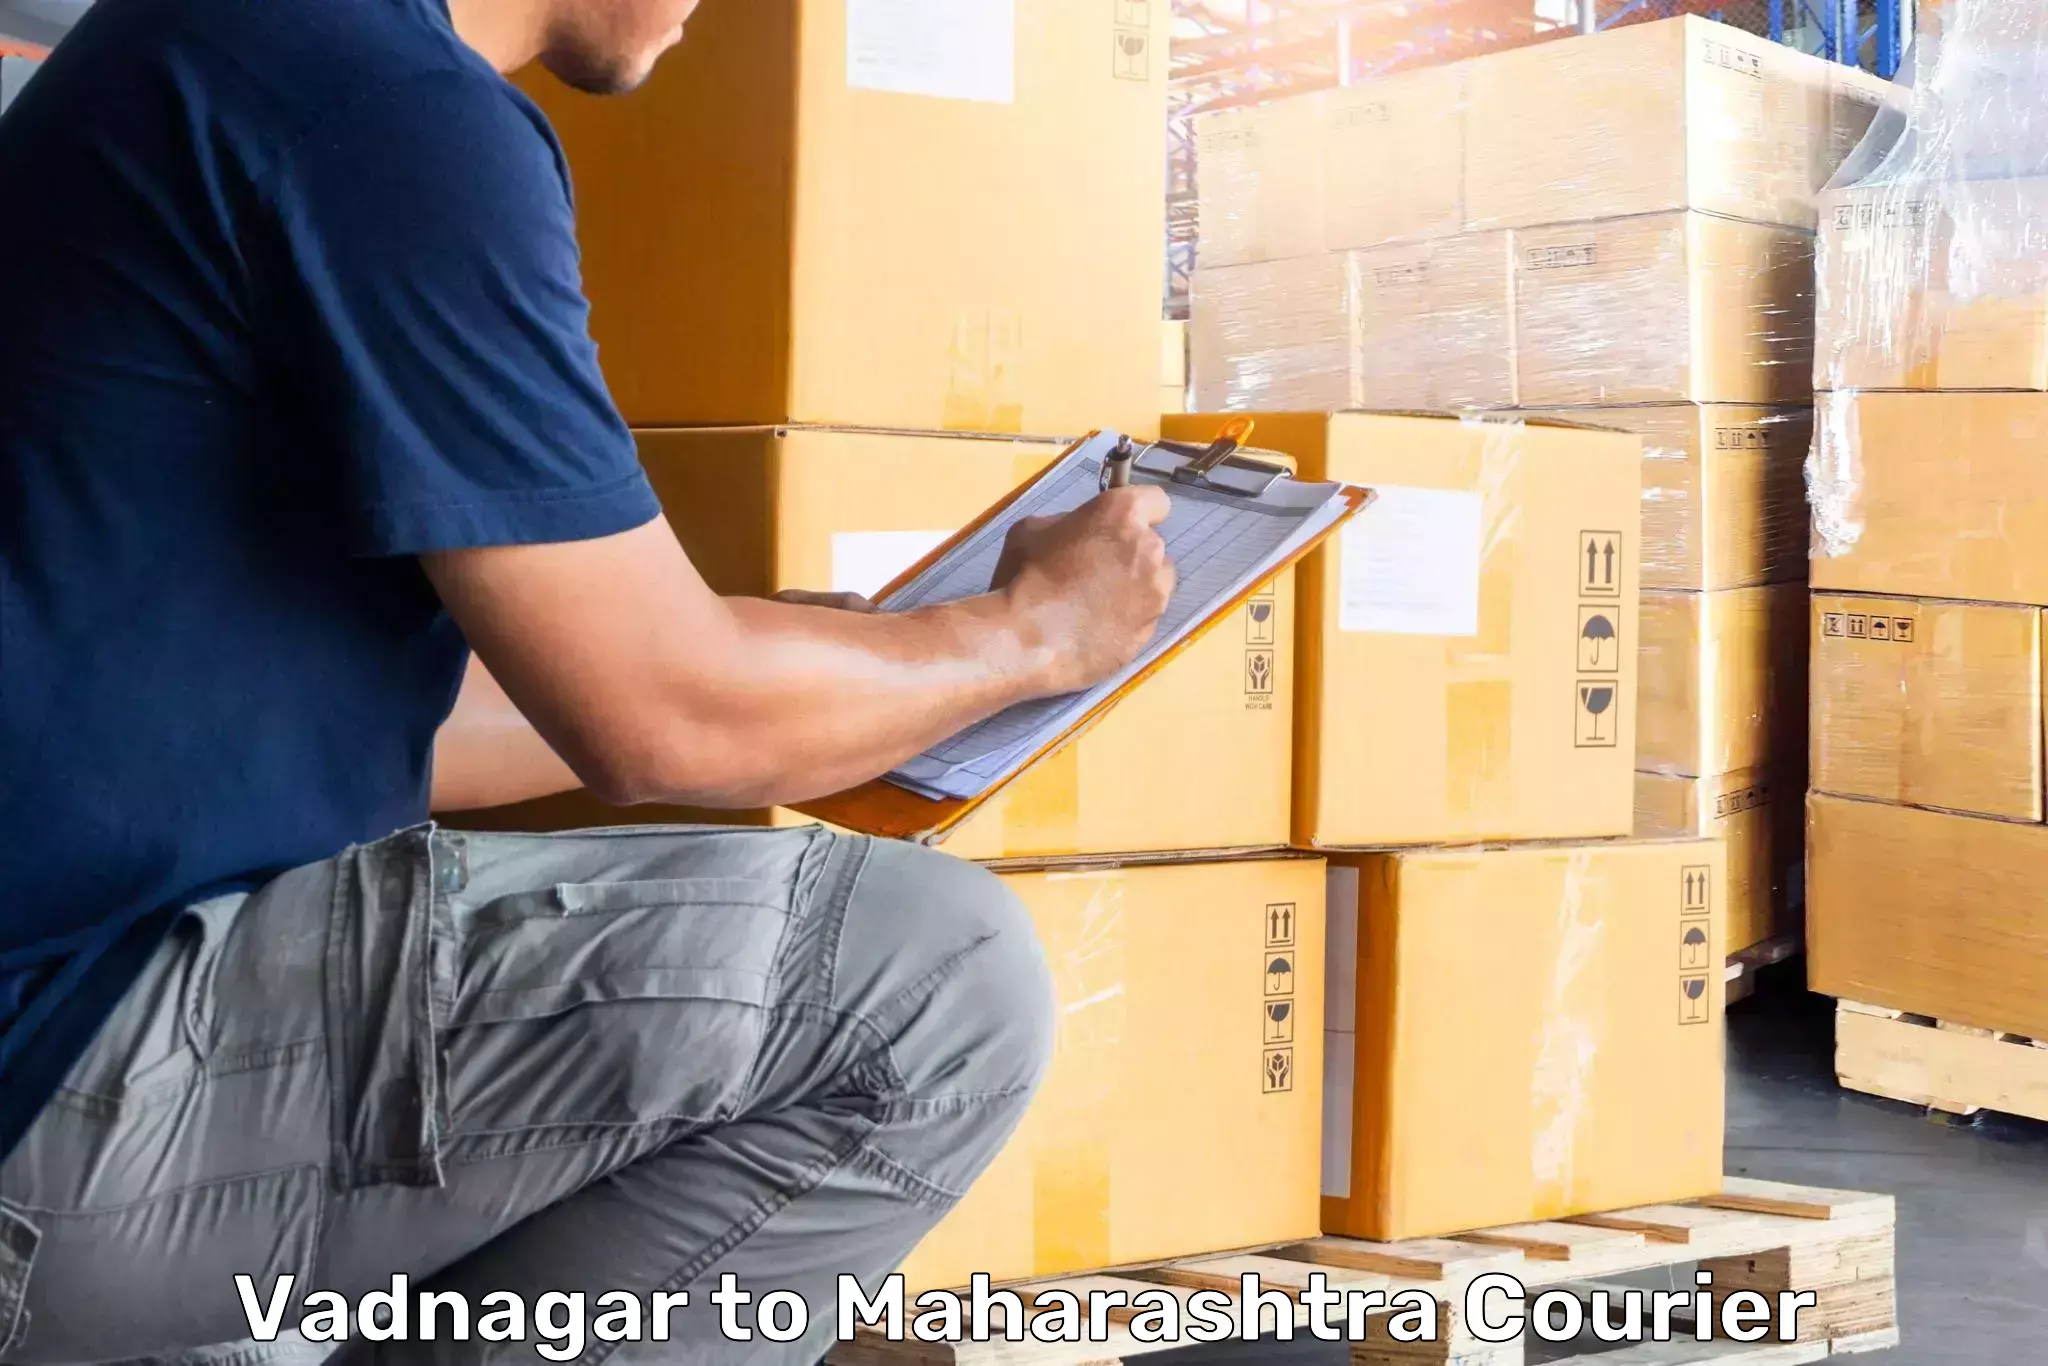 Luggage delivery app Vadnagar to Atpadi